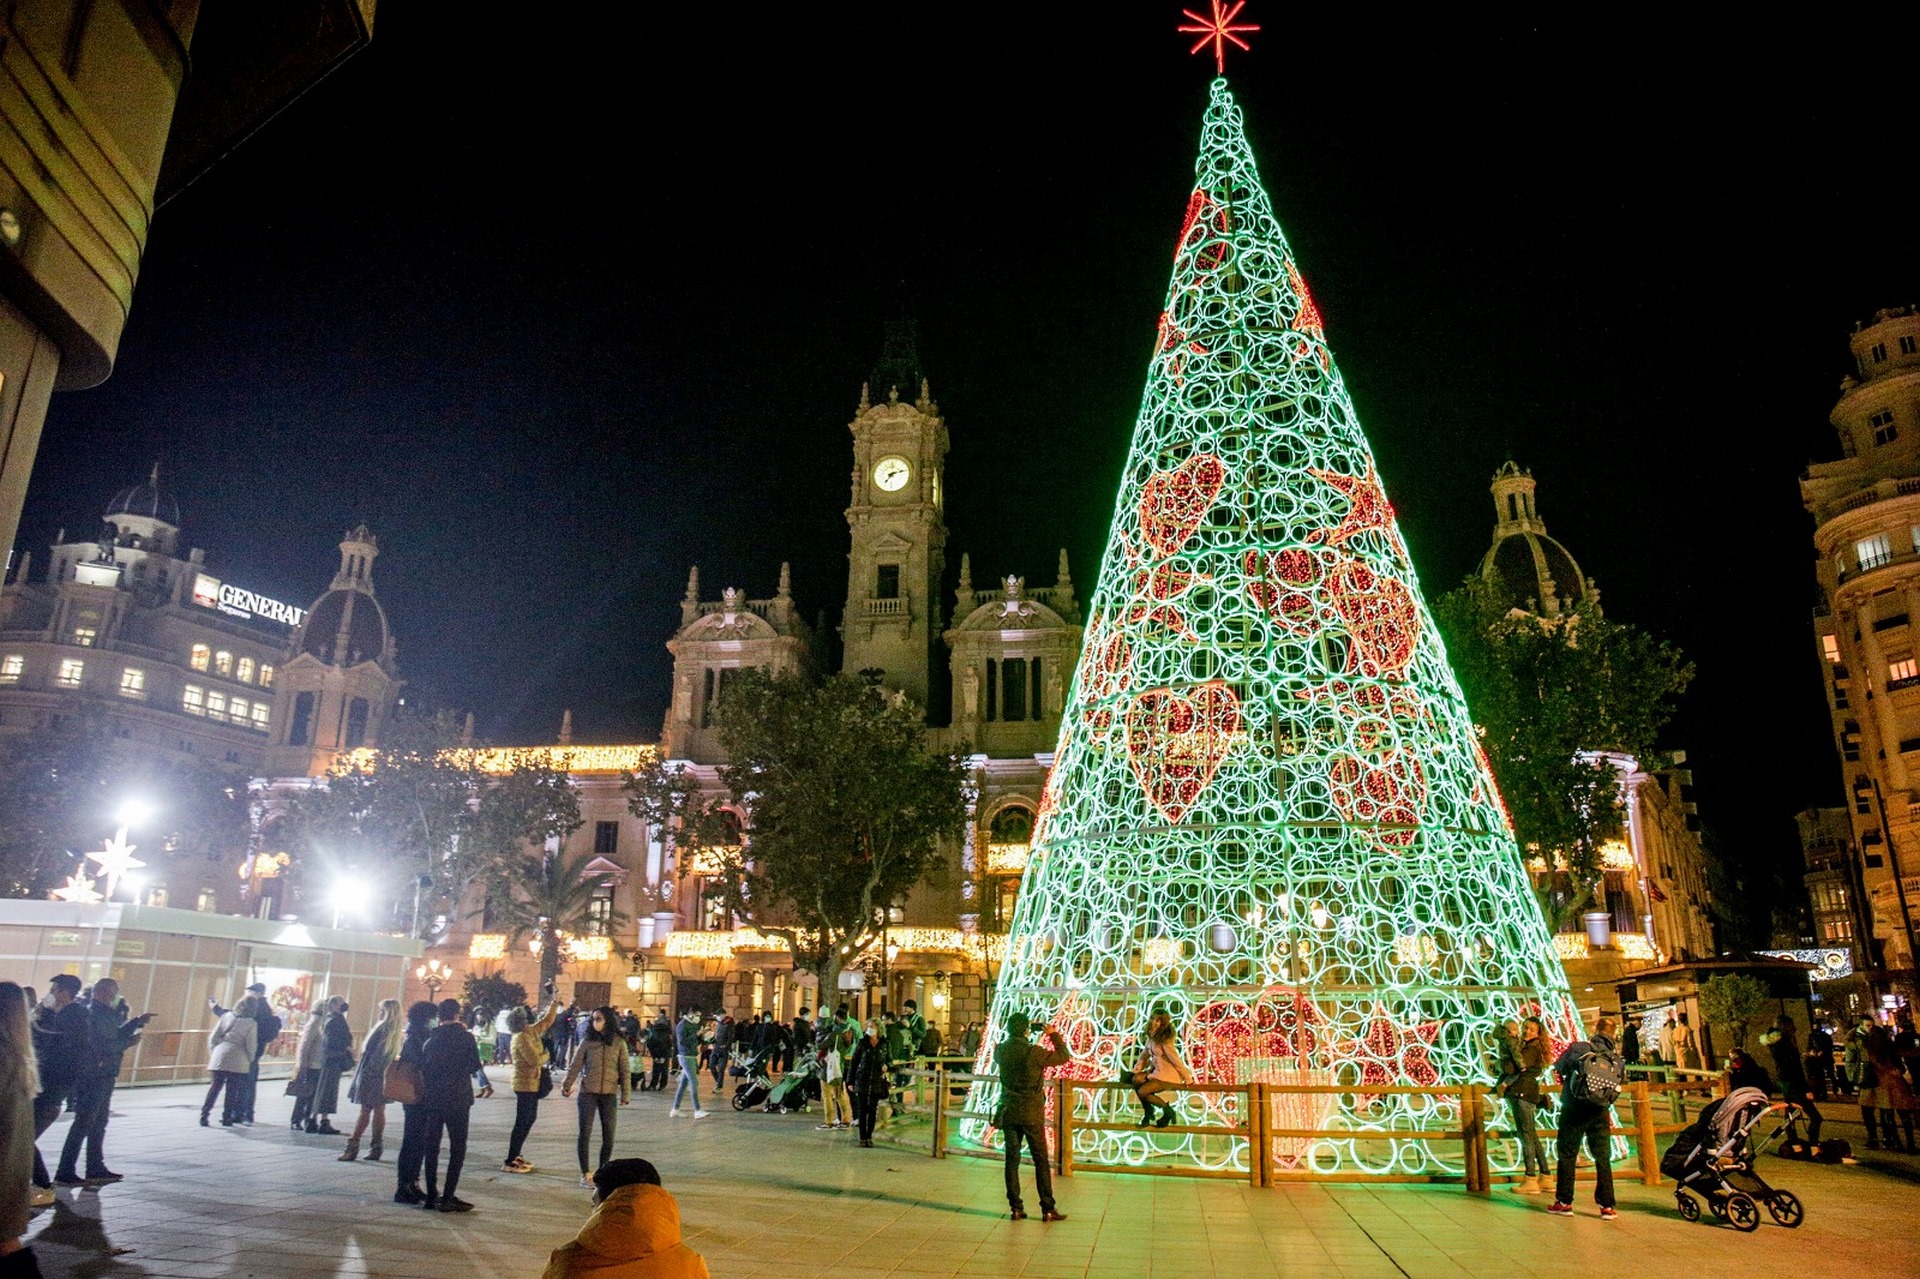 Llums Nadal / luces Navidad - València